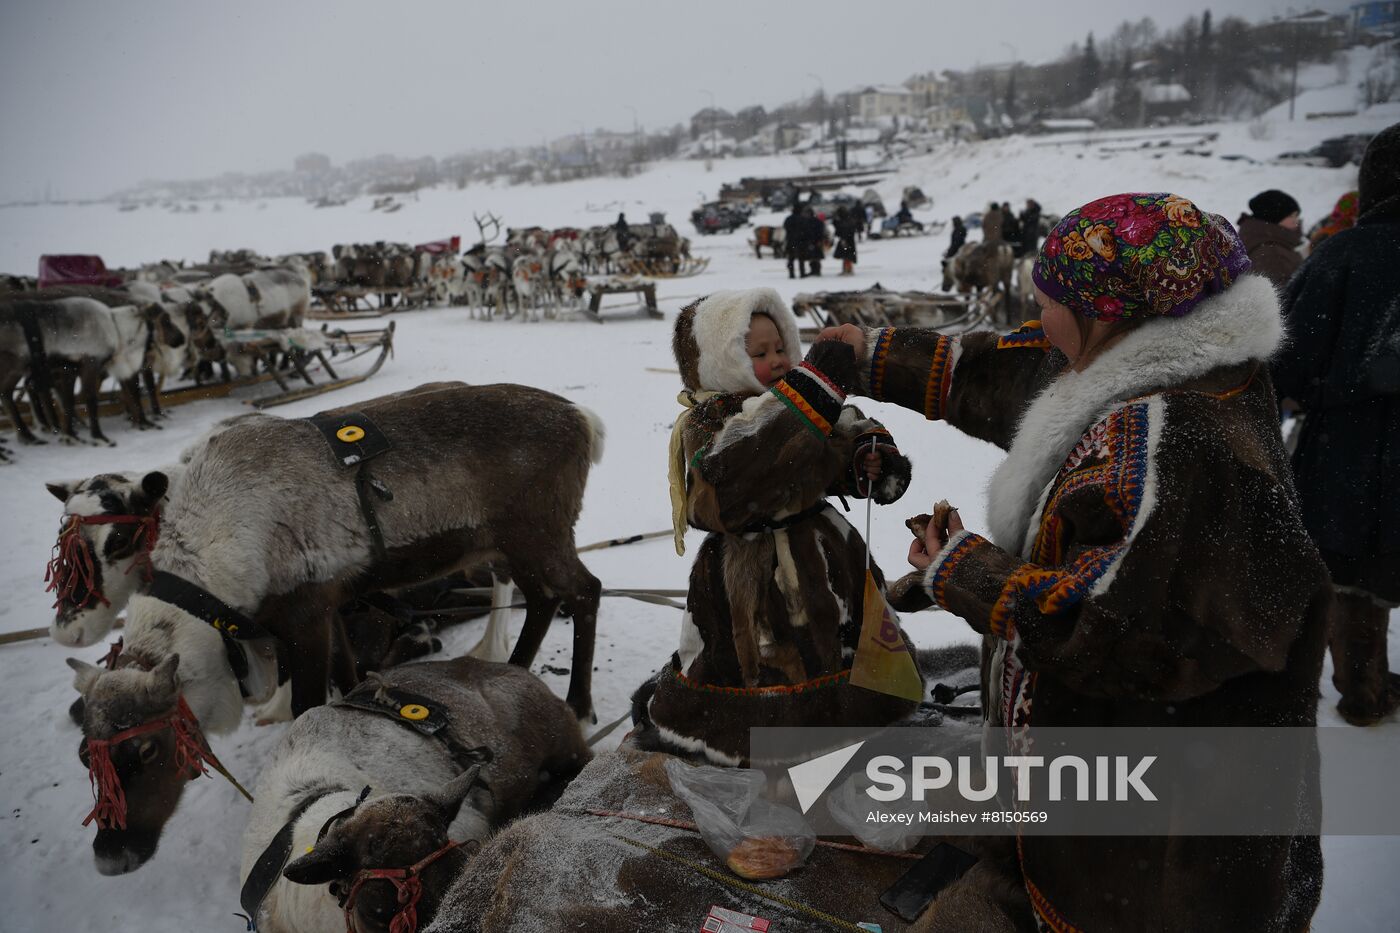 Russia Reindeer Herder's Day